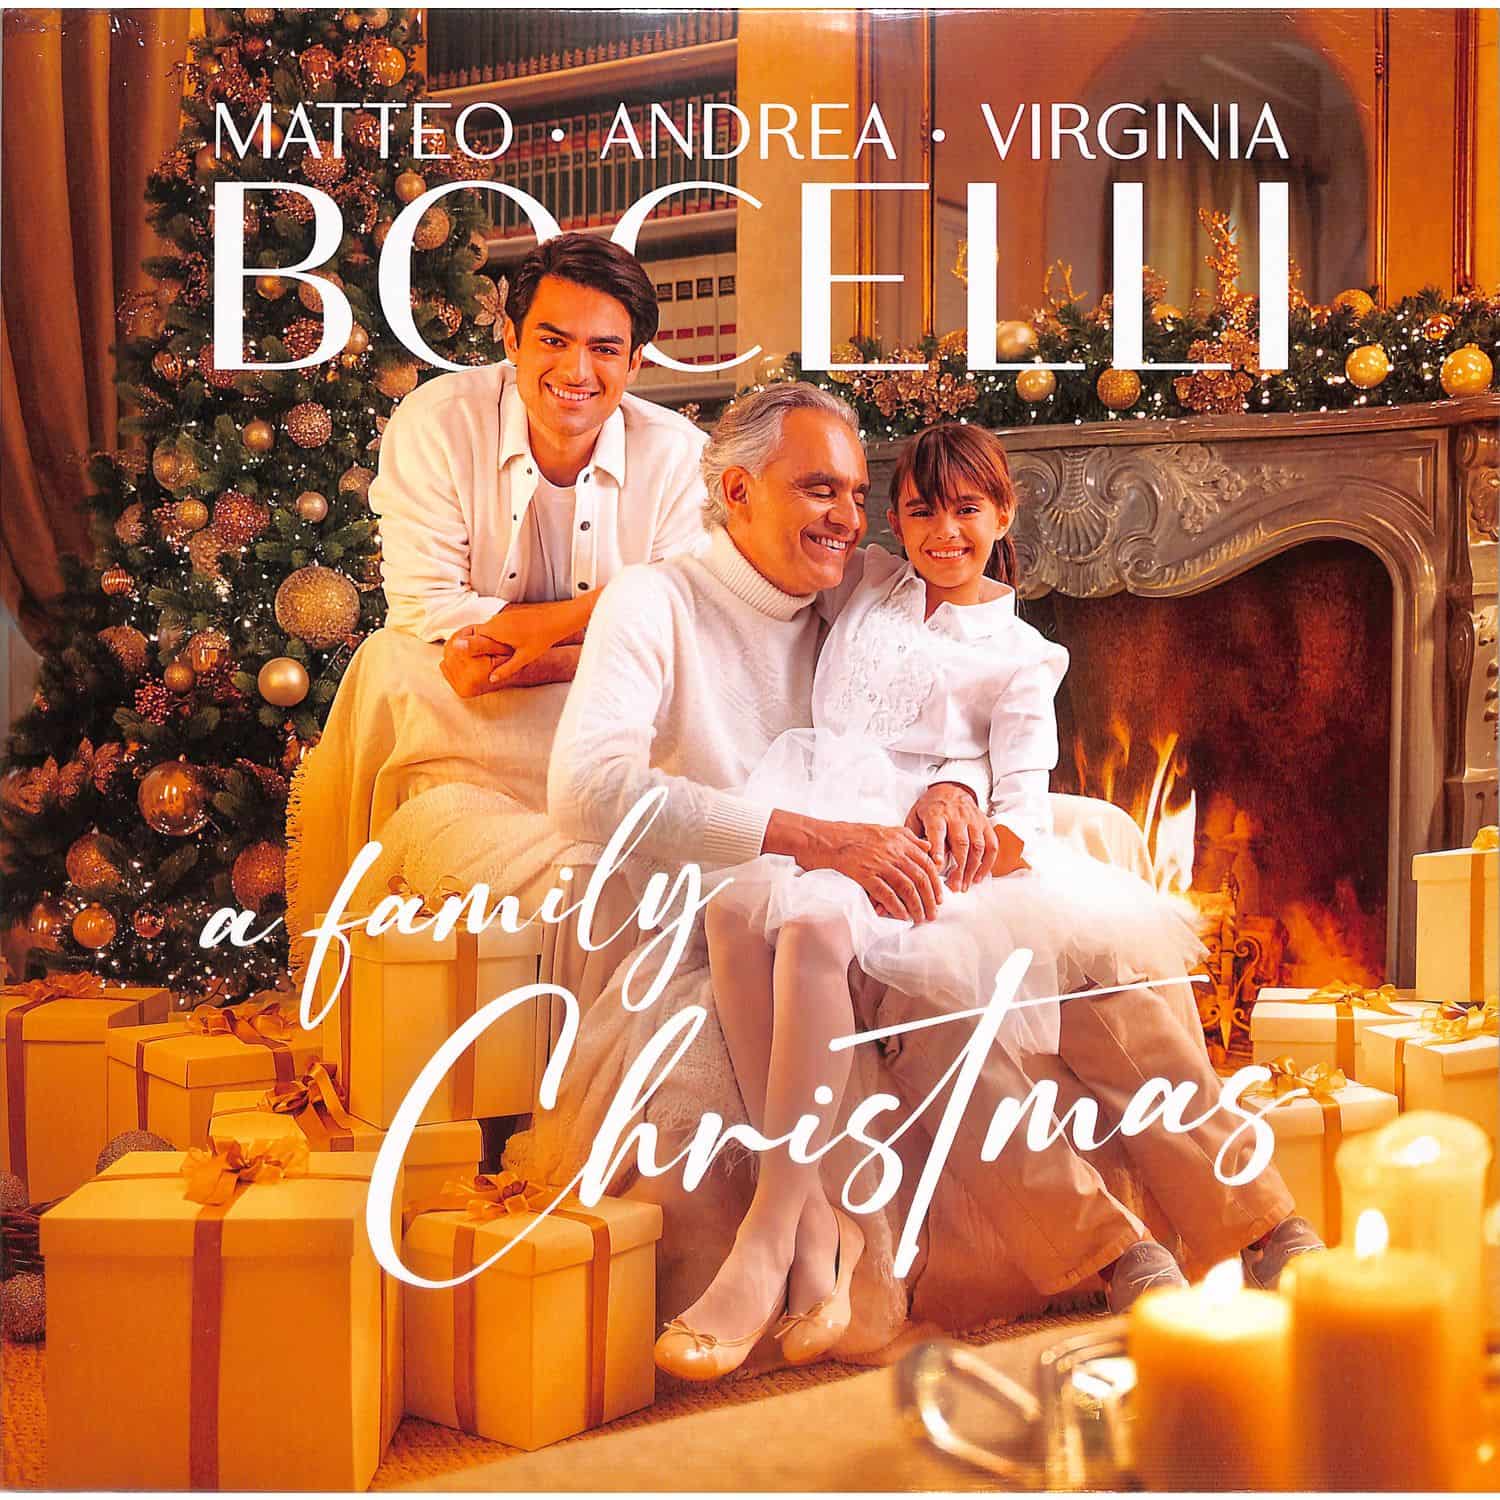 Andrea Bocelli,Matteo/Bocelli,Virginia / Feliciano,Jose/Martin,Hugh/John Lennon - A FAMILY CHRISTMAS 